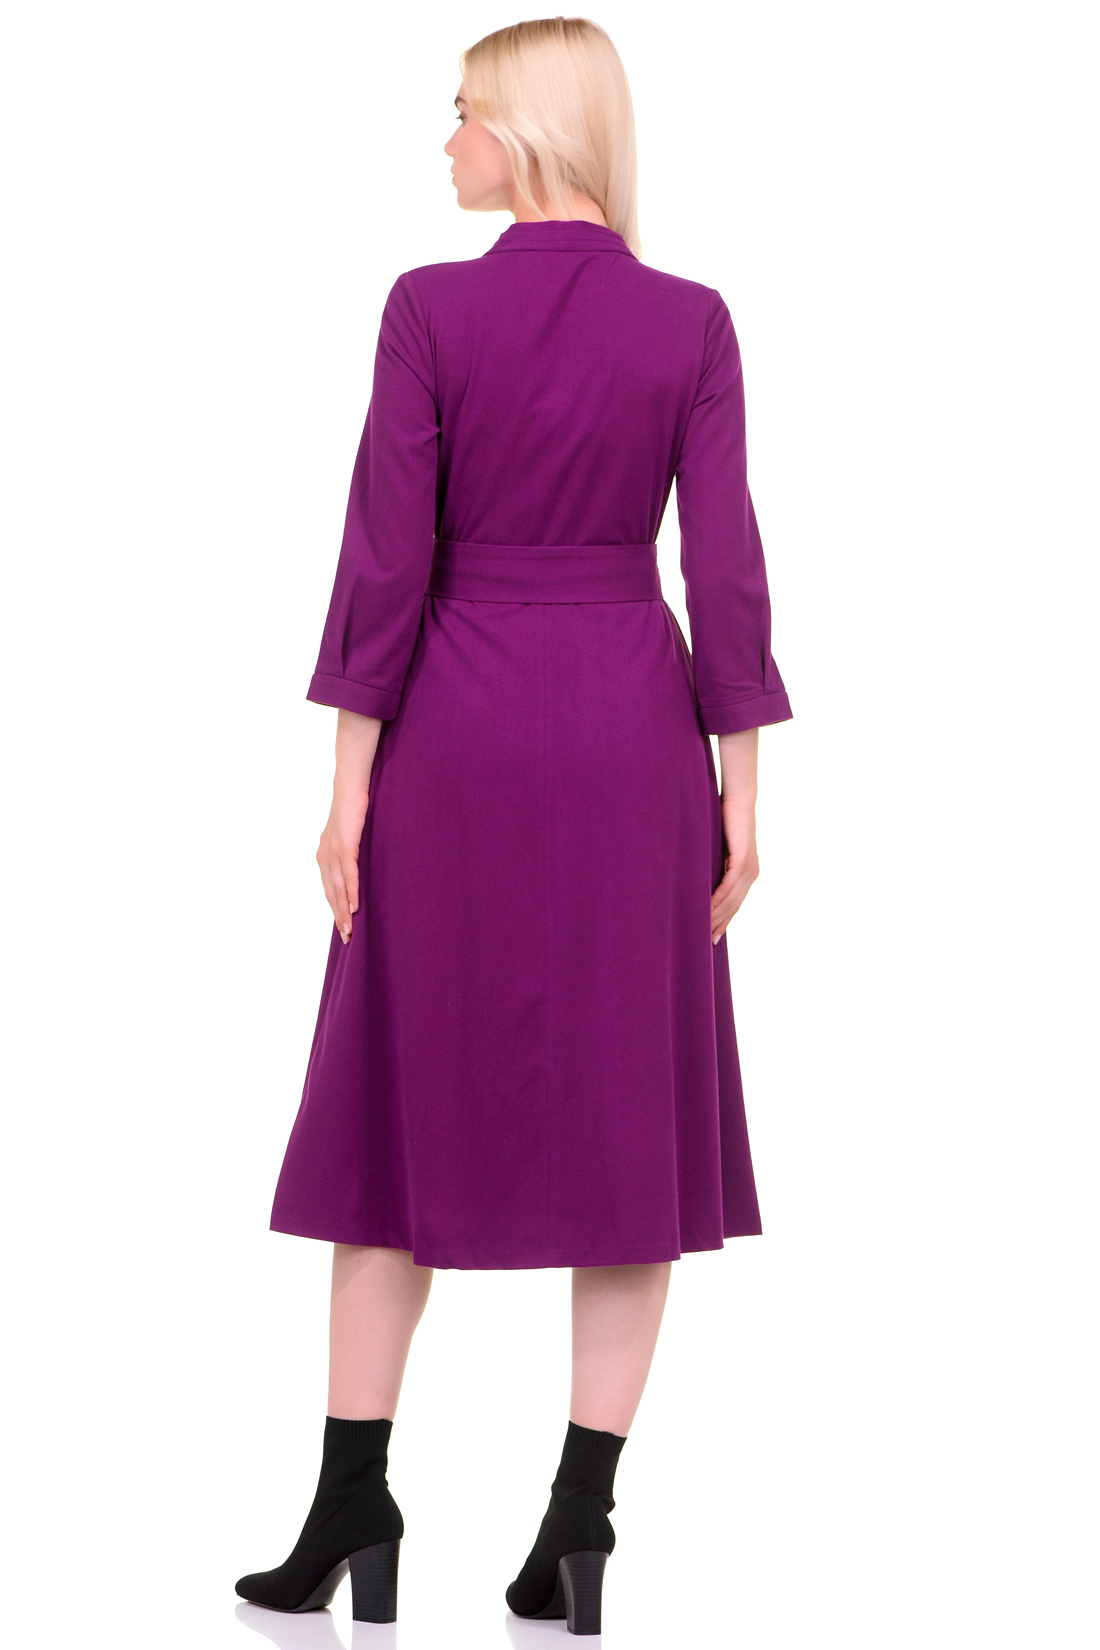 Платье с V-образным вырезом (арт. baon B459549), размер XS, цвет фиолетовый Платье с V-образным вырезом (арт. baon B459549) - фото 2